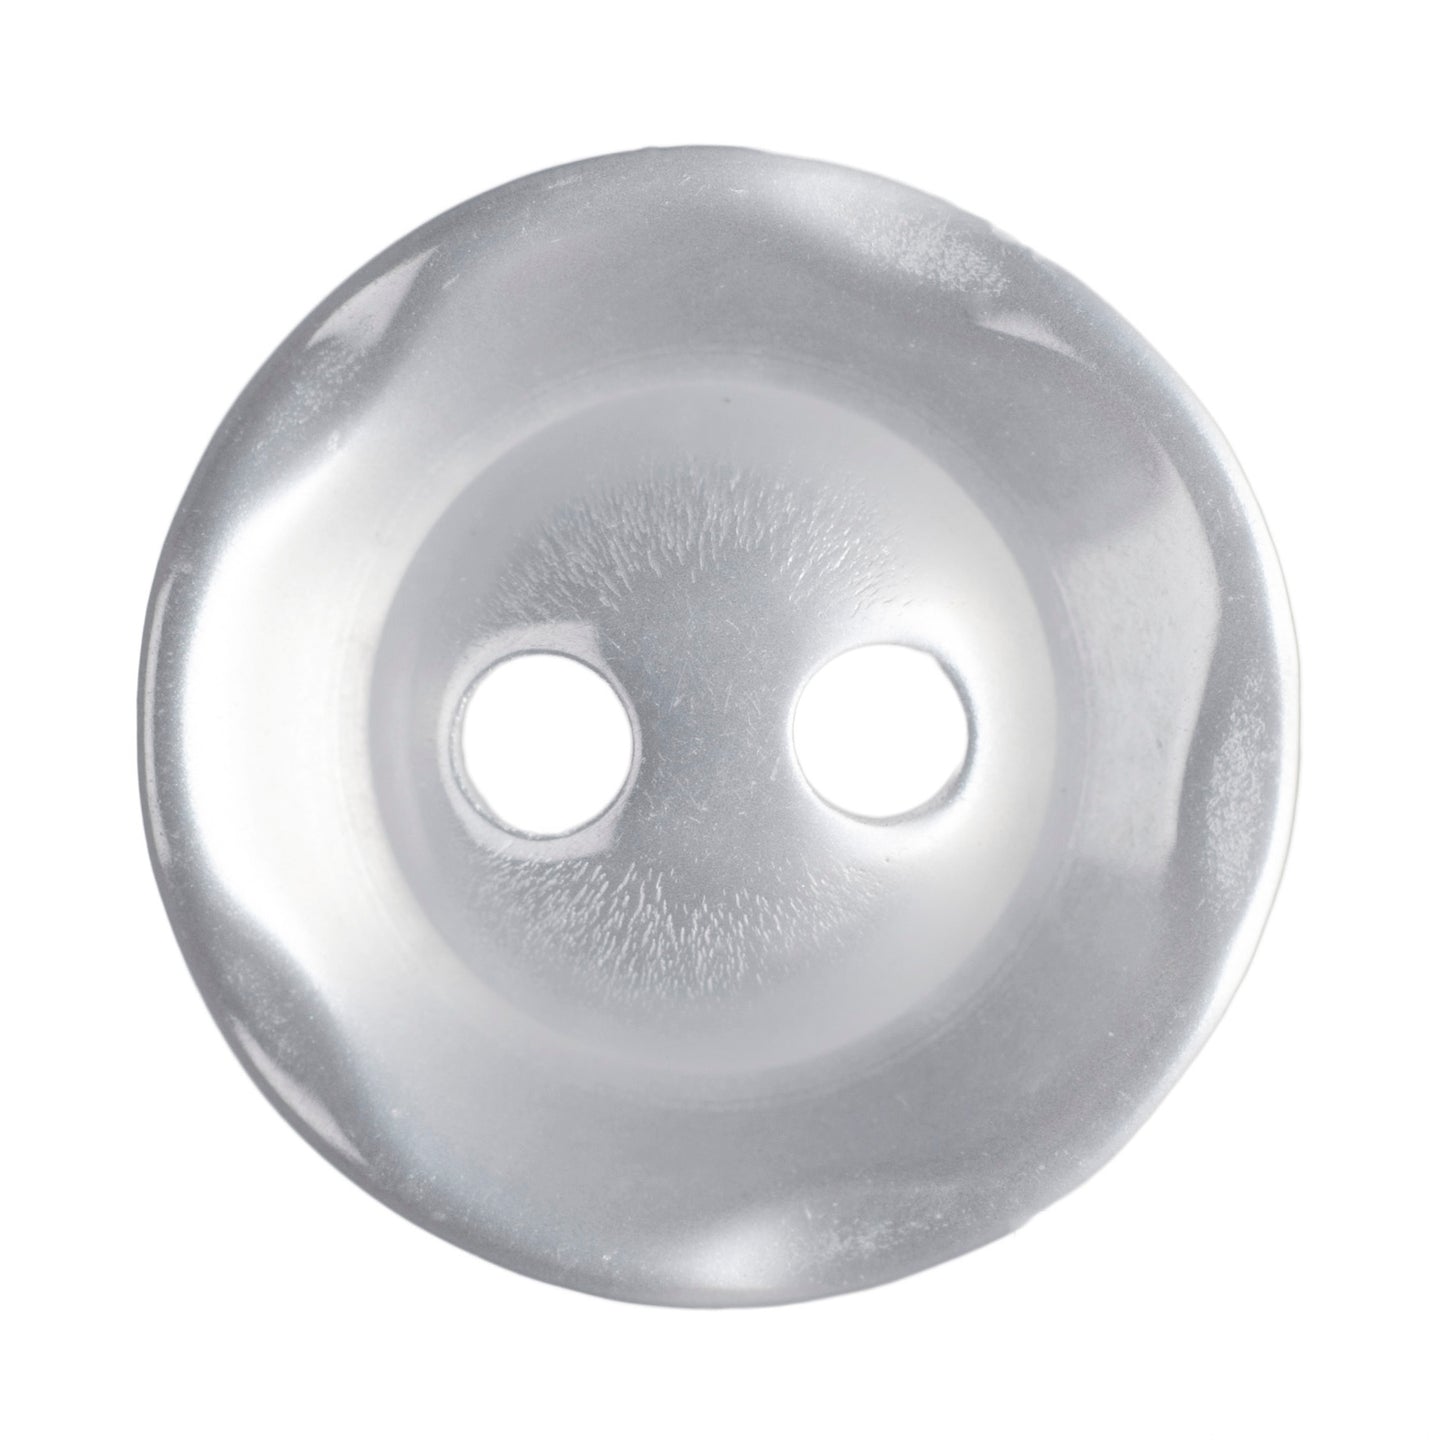 Polyester Scalloped Edge Button - 14mm - Pearl White [LA25.1]